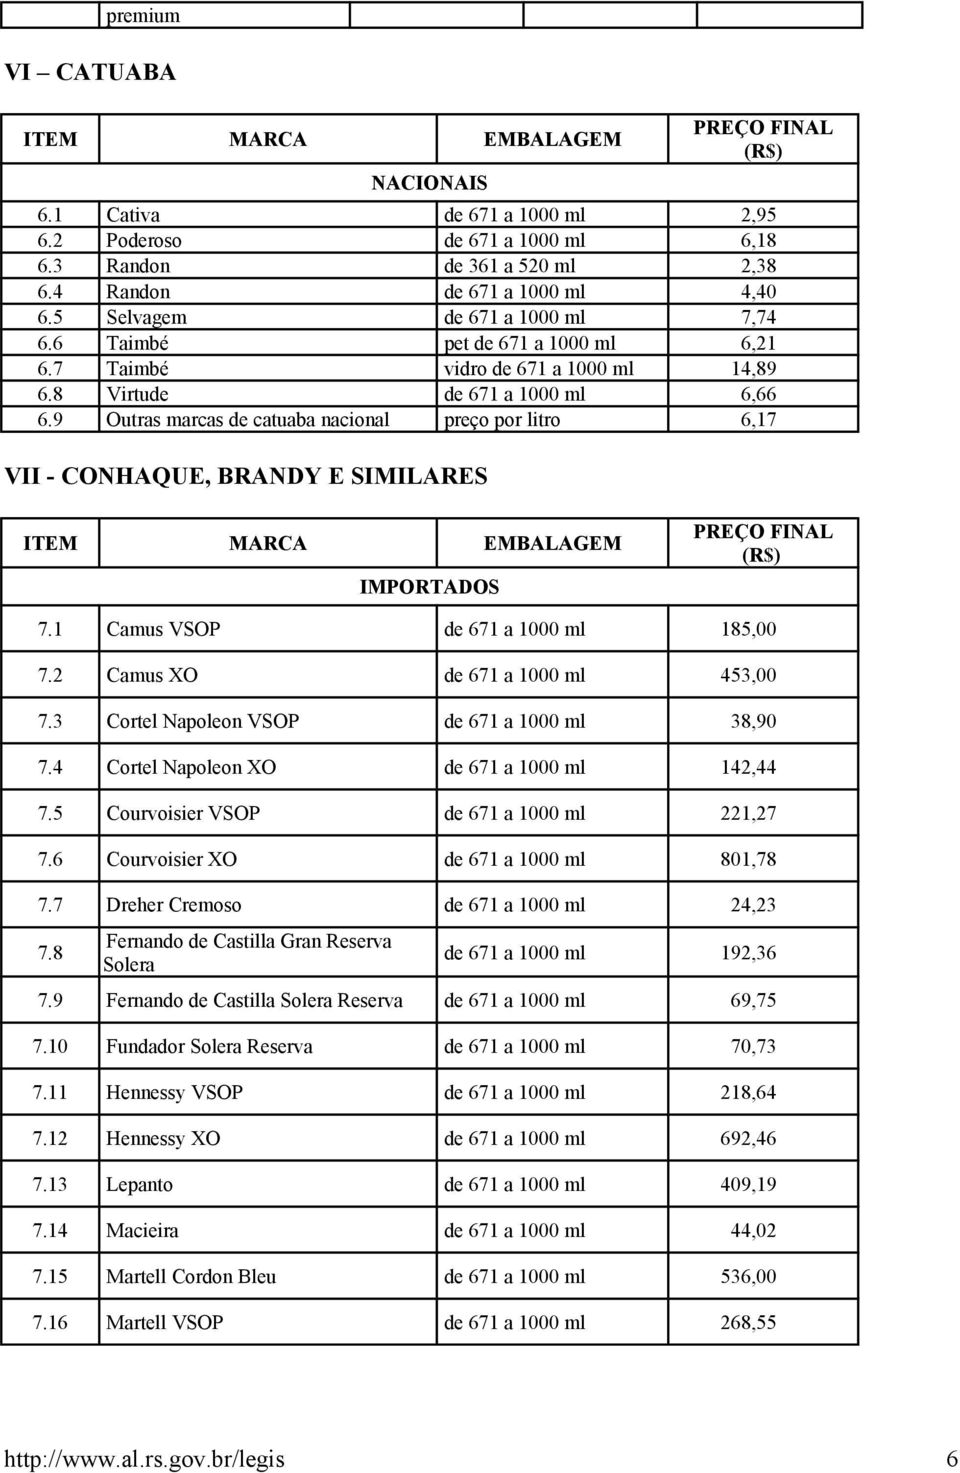 9 Outras marcas de catuaba nacional preço por litro 6,17 VII - CONHAQUE, BRANDY E SIMILARES 7.1 Camus VSOP de 671 a 1000 ml 185,00 7.2 Camus XO de 671 a 1000 ml 453,00 7.